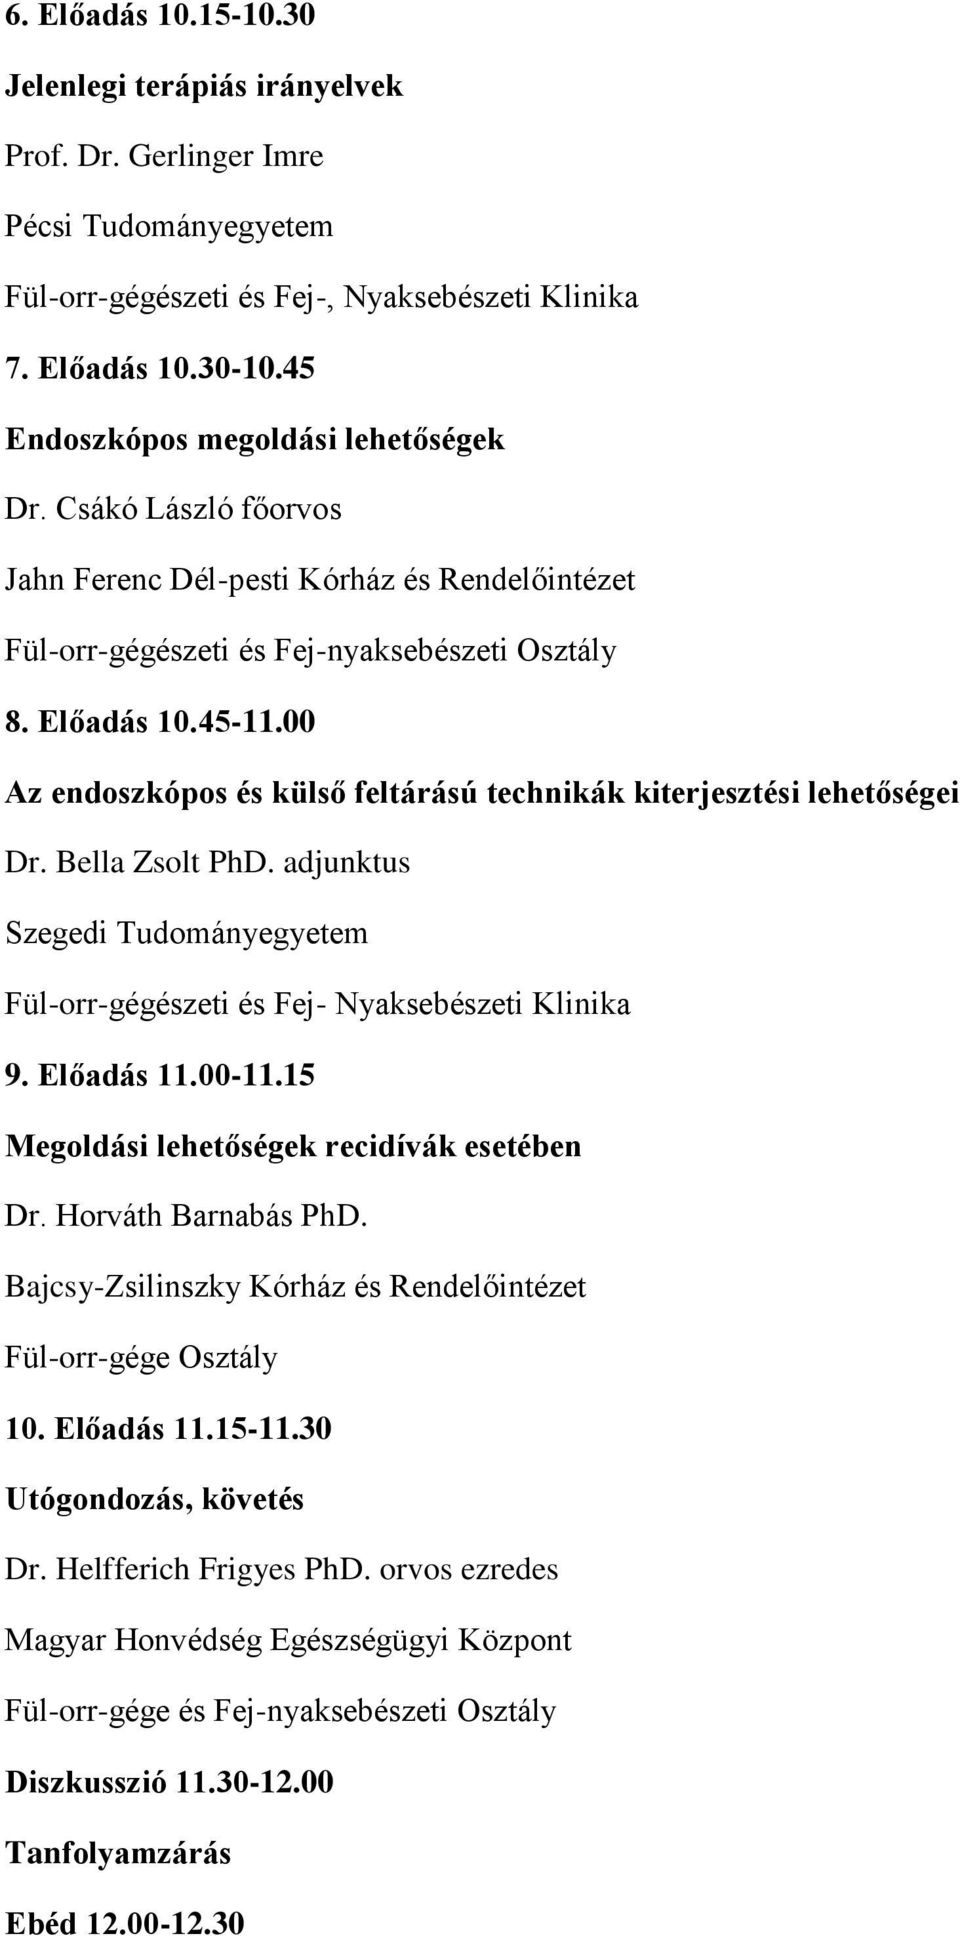 00 Az endoszkópos és külső feltárású technikák kiterjesztési lehetőségei Dr. Bella Zsolt PhD. adjunktus Szegedi Tudományegyetem Fül-orr-gégészeti és Fej- Nyaksebészeti Klinika 9. Előadás 11.00-11.